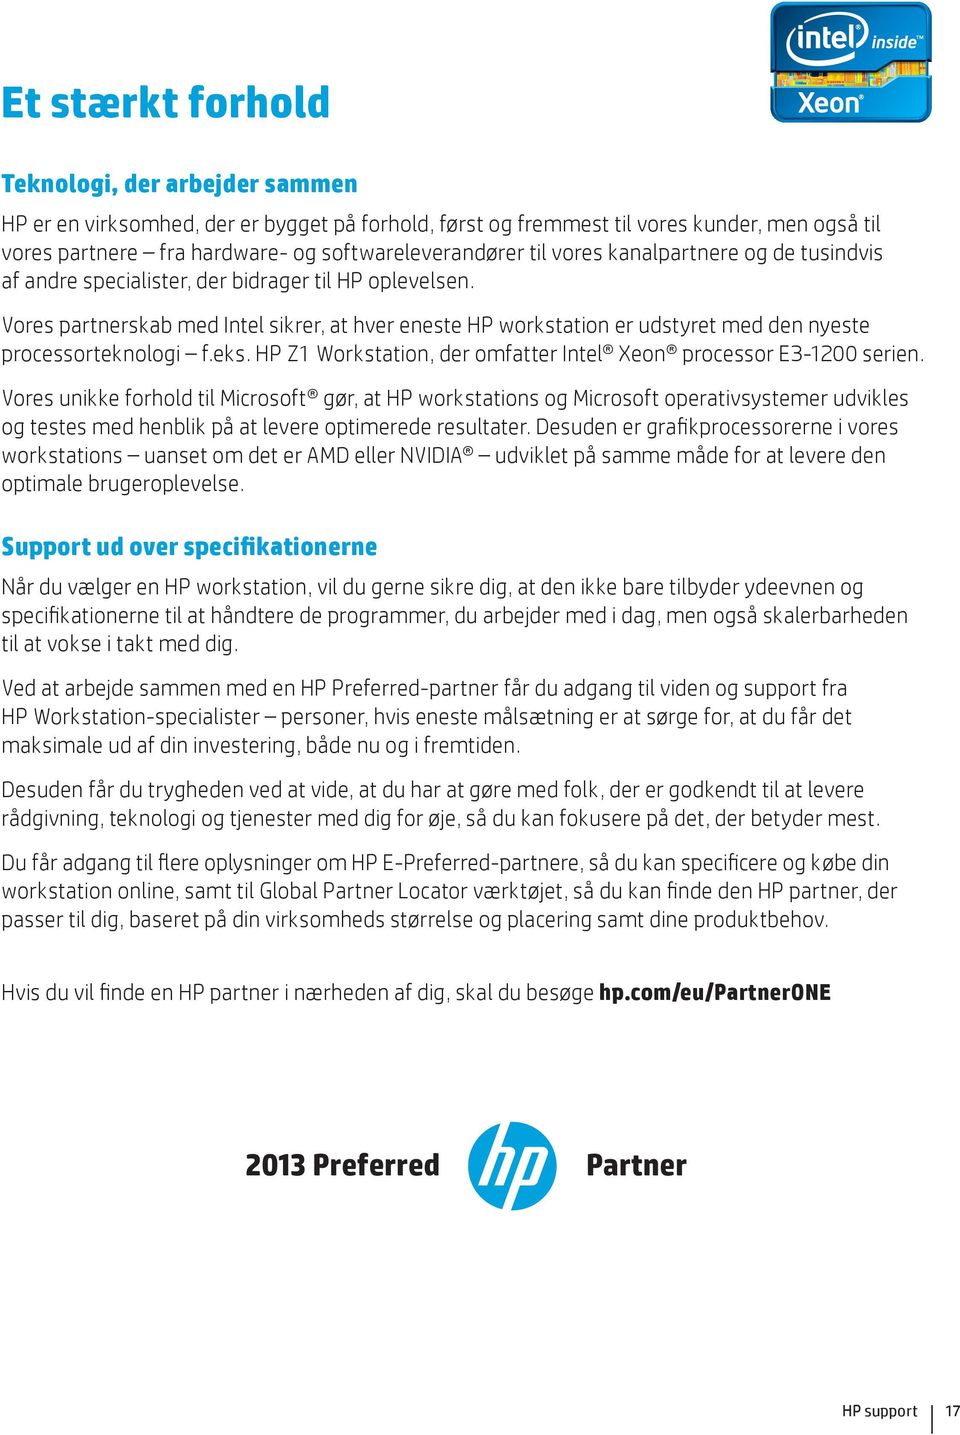 Vores partnerskab med Intel sikrer, at hver eneste HP workstation er udstyret med den nyeste processorteknologi f.eks. HP Z1 Workstation, der omfatter Intel Xeon processor E3-1200 serien.